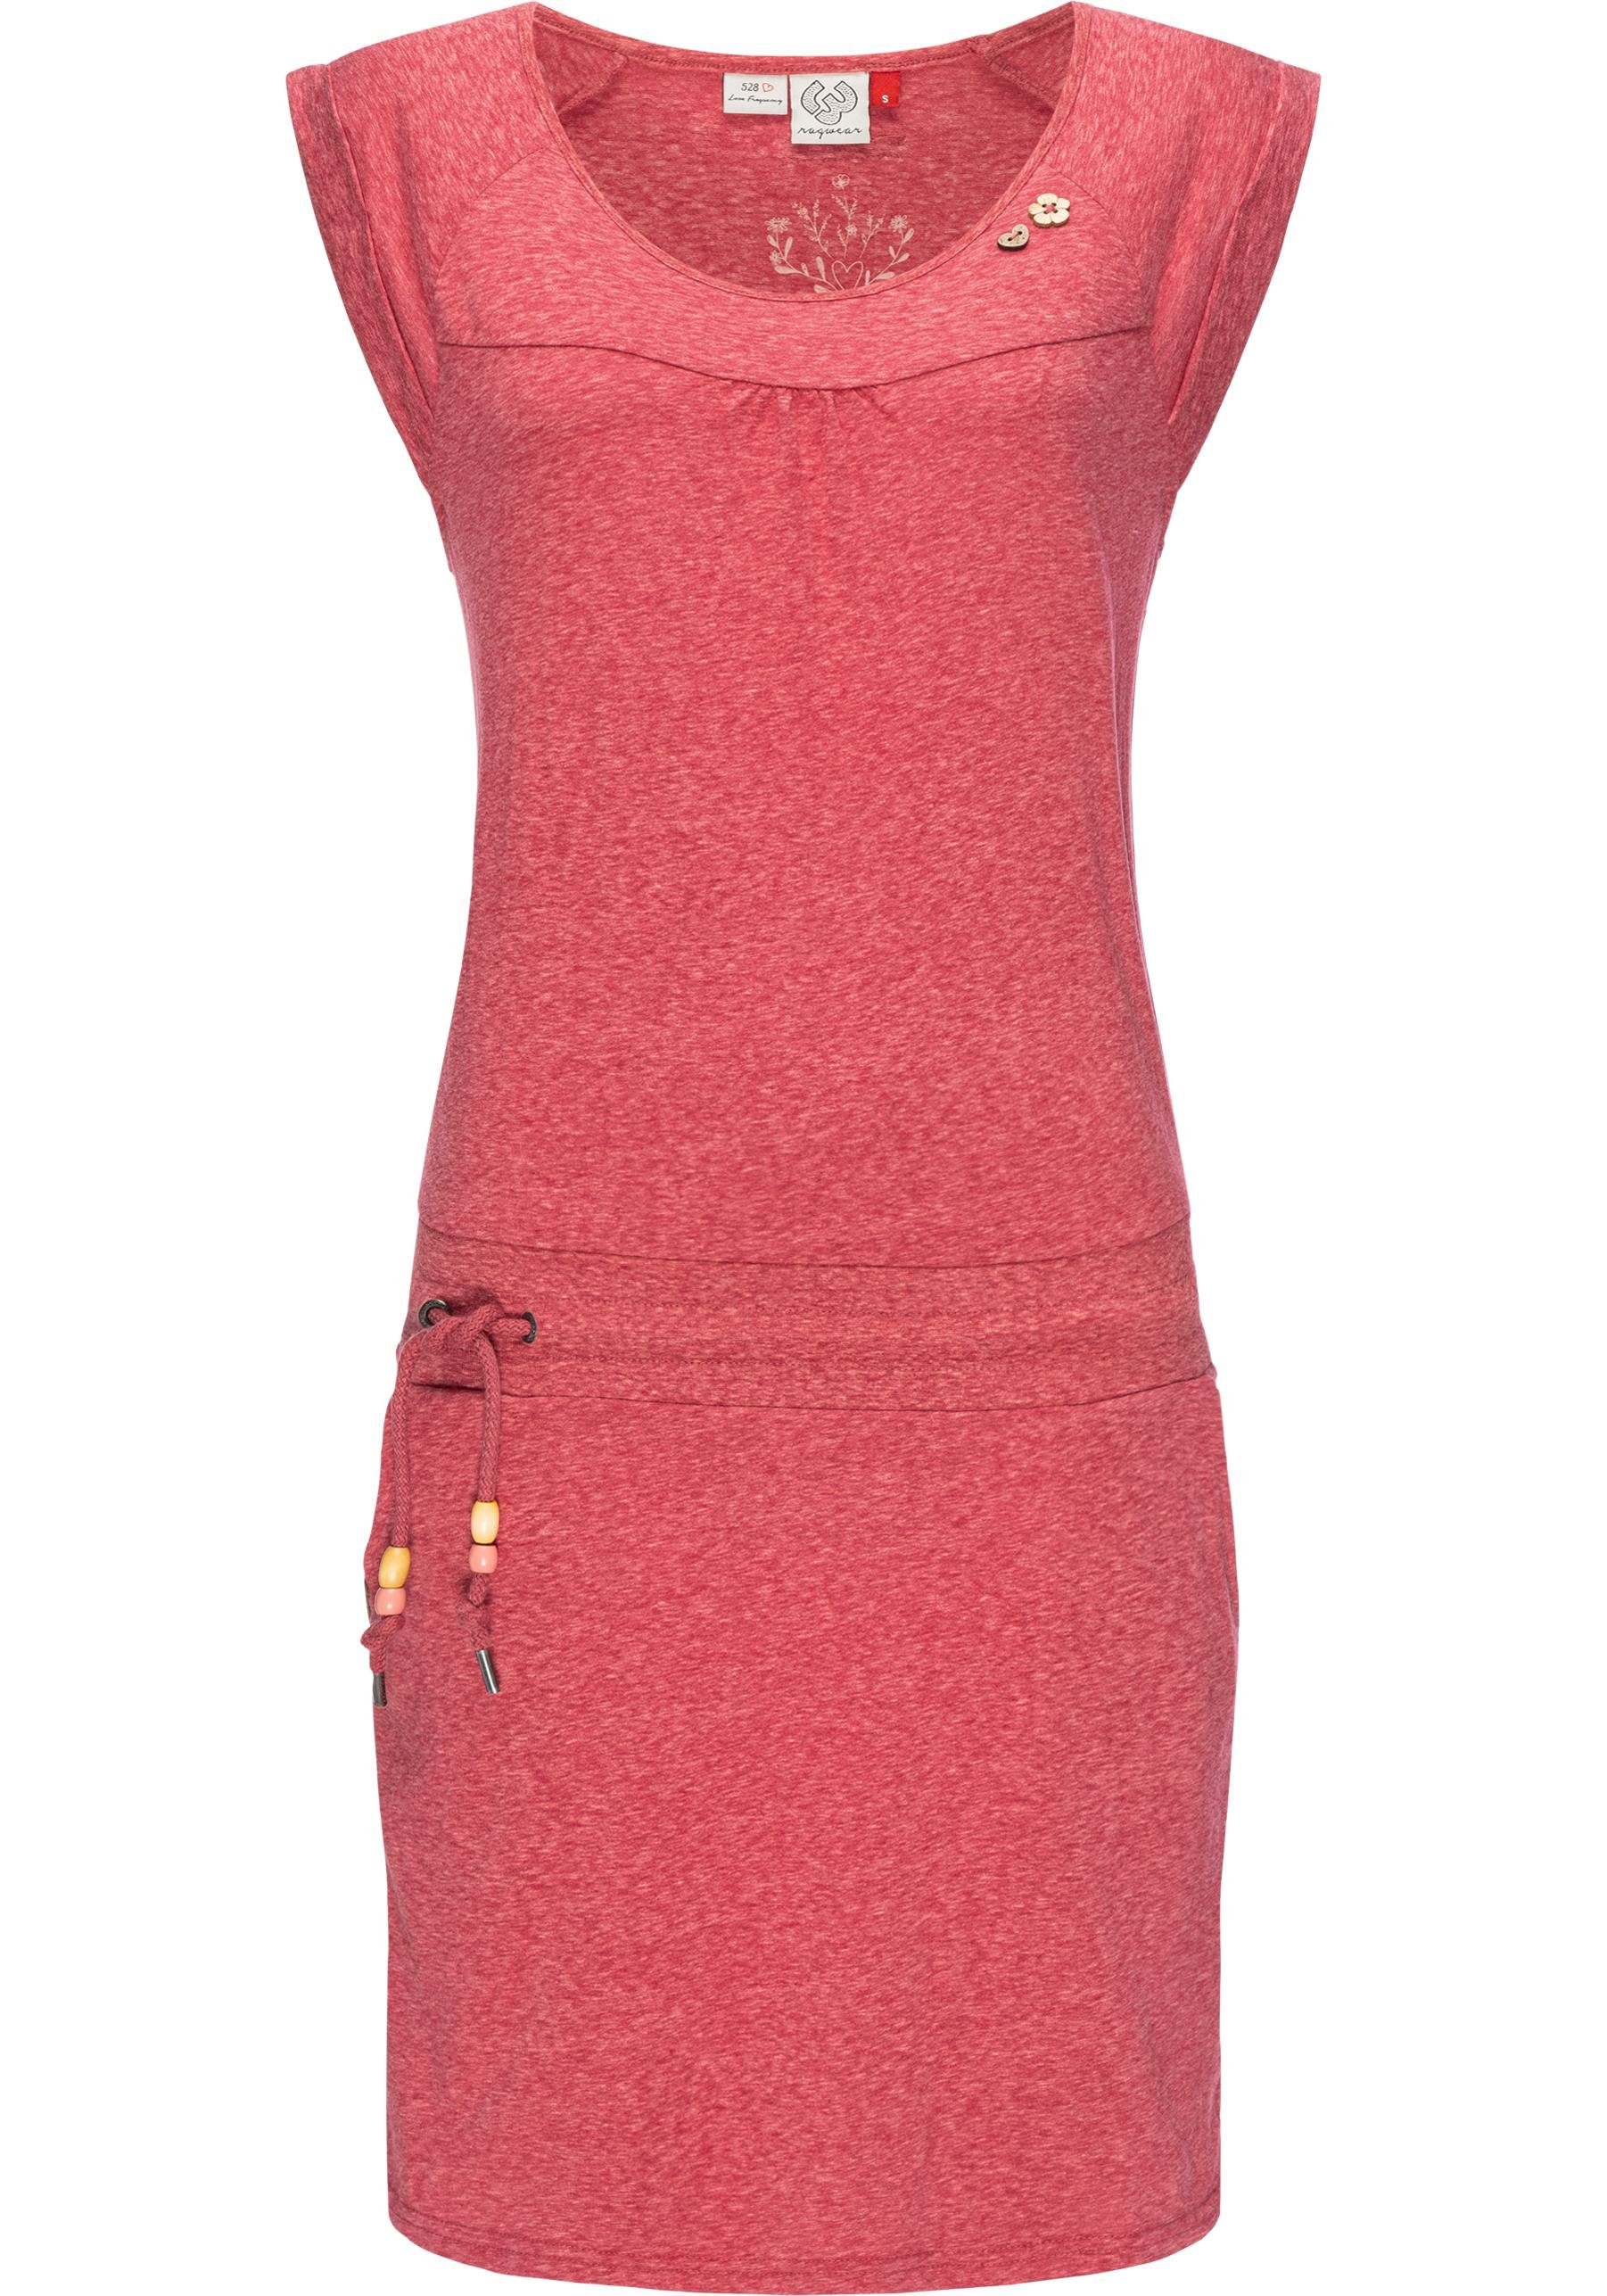 Baumwoll leichtes Penelope Ragwear karminrot mit Kleid Sommerkleid Print